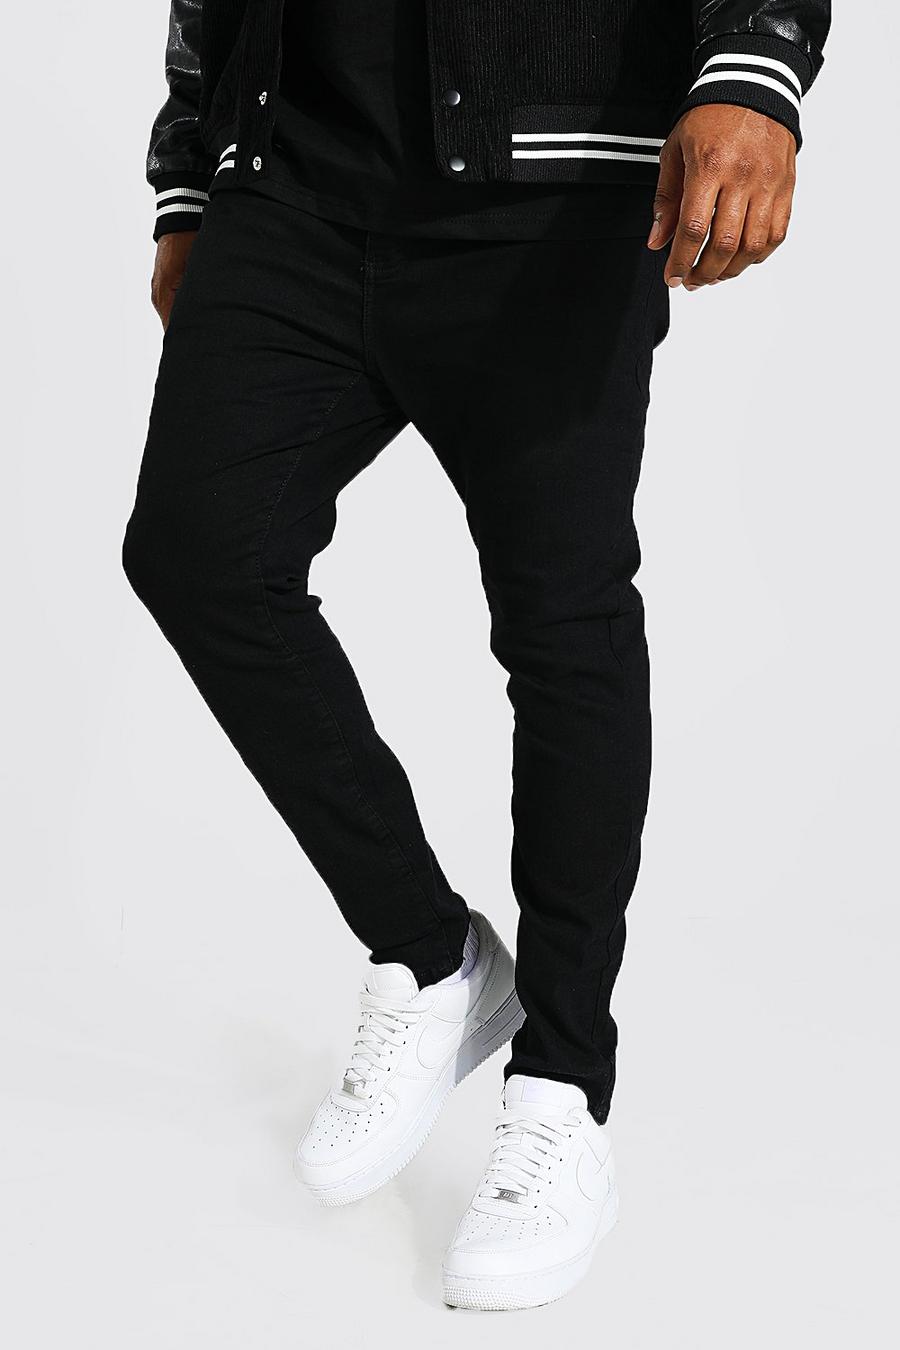 Black noir Plus Size Super Skinny Jeans